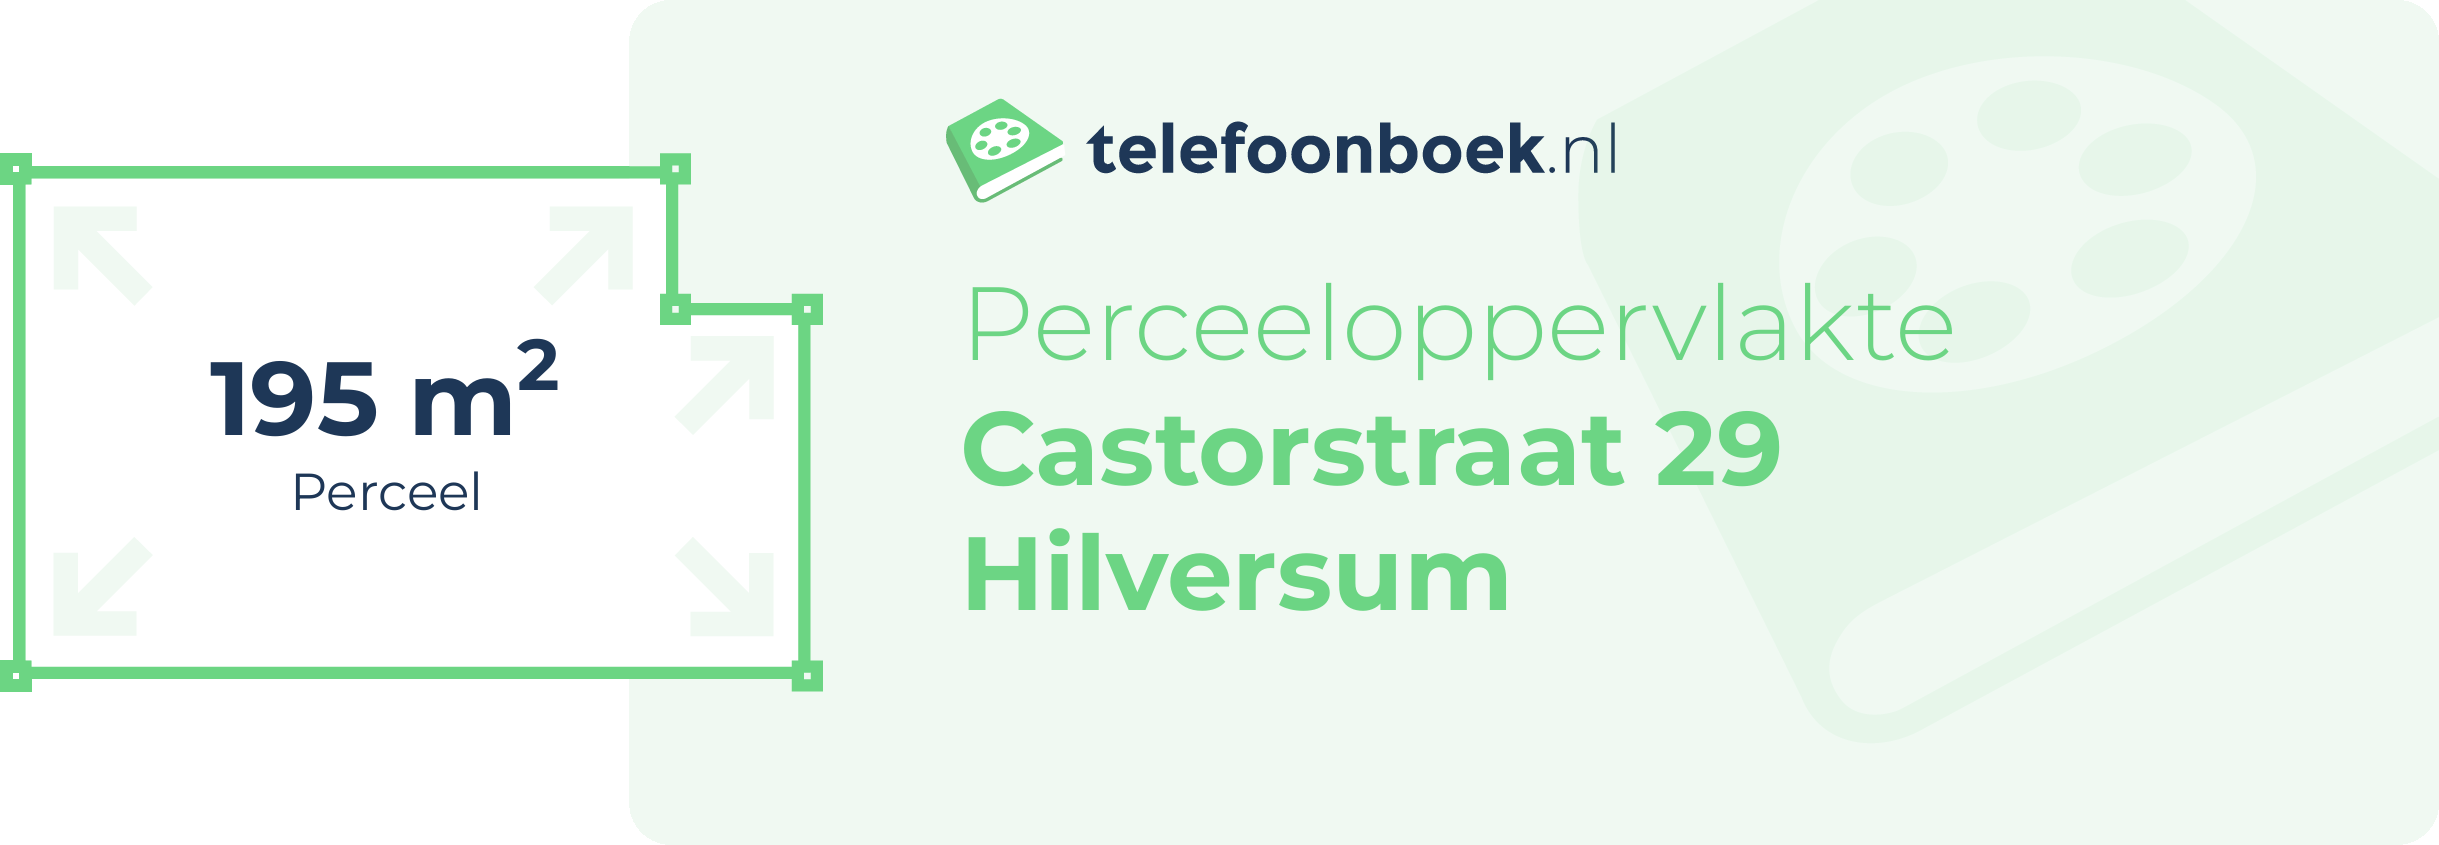 Perceeloppervlakte Castorstraat 29 Hilversum